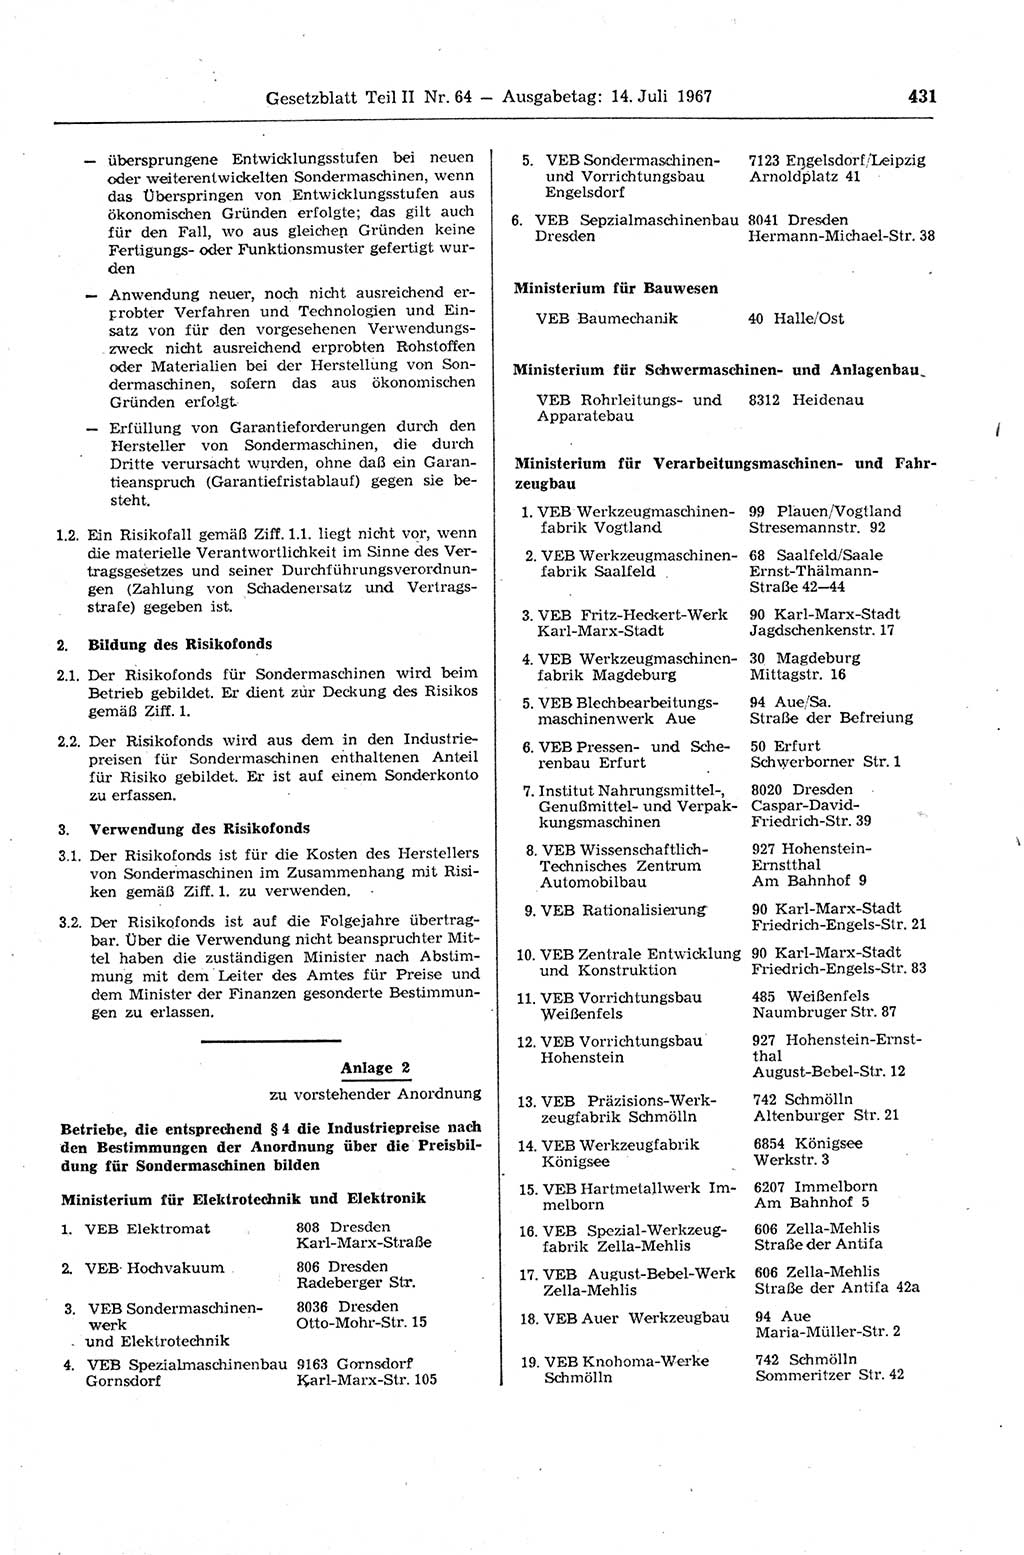 Gesetzblatt (GBl.) der Deutschen Demokratischen Republik (DDR) Teil ⅠⅠ 1967, Seite 431 (GBl. DDR ⅠⅠ 1967, S. 431)